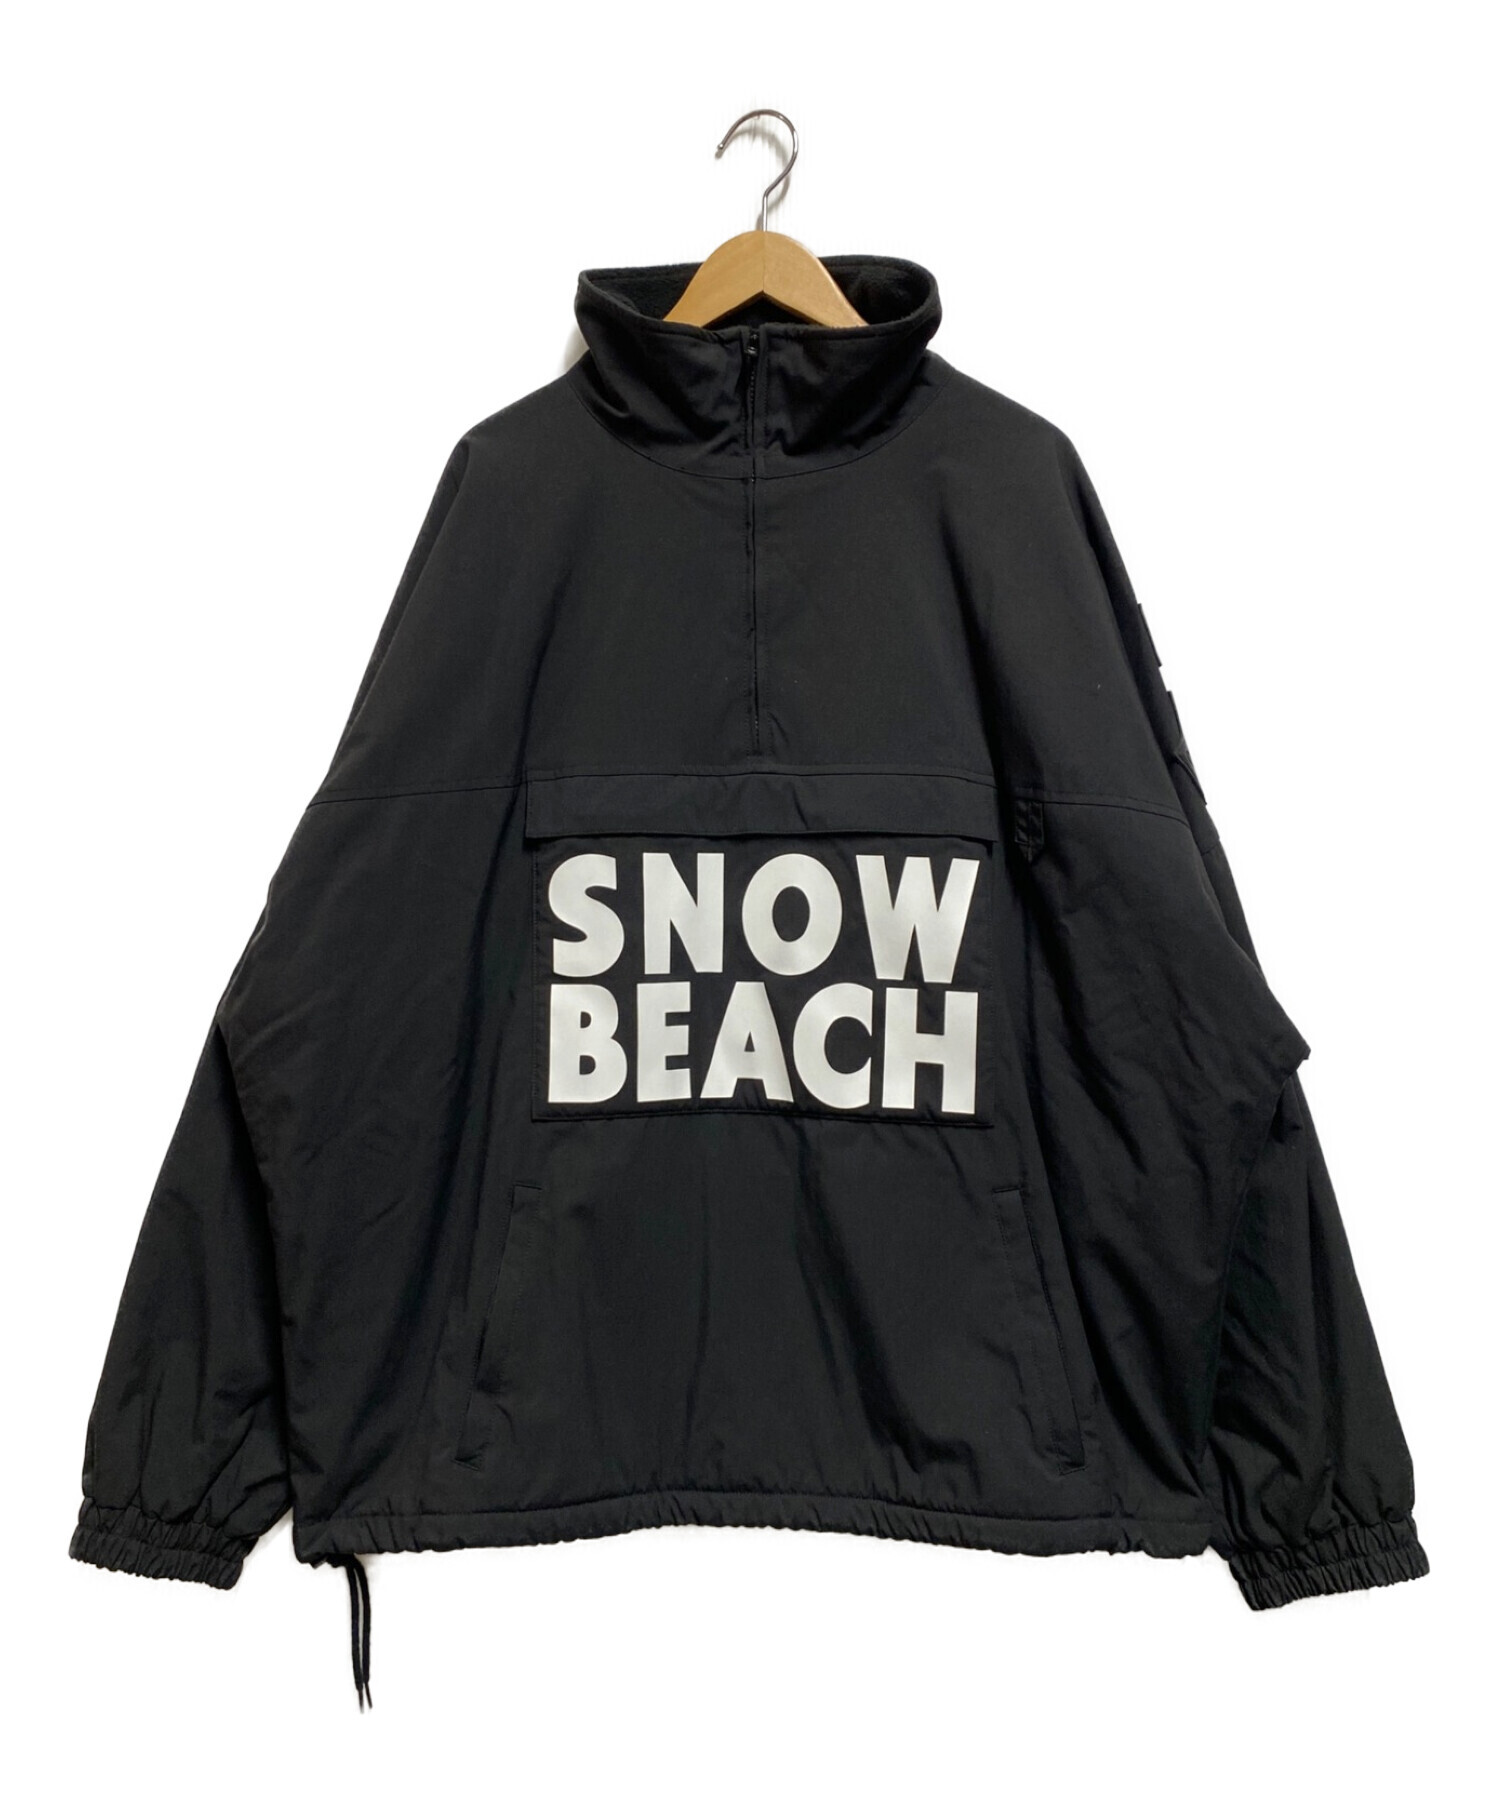 ラルフローレン SNOW BEACH フリース ジャケット size L1980s